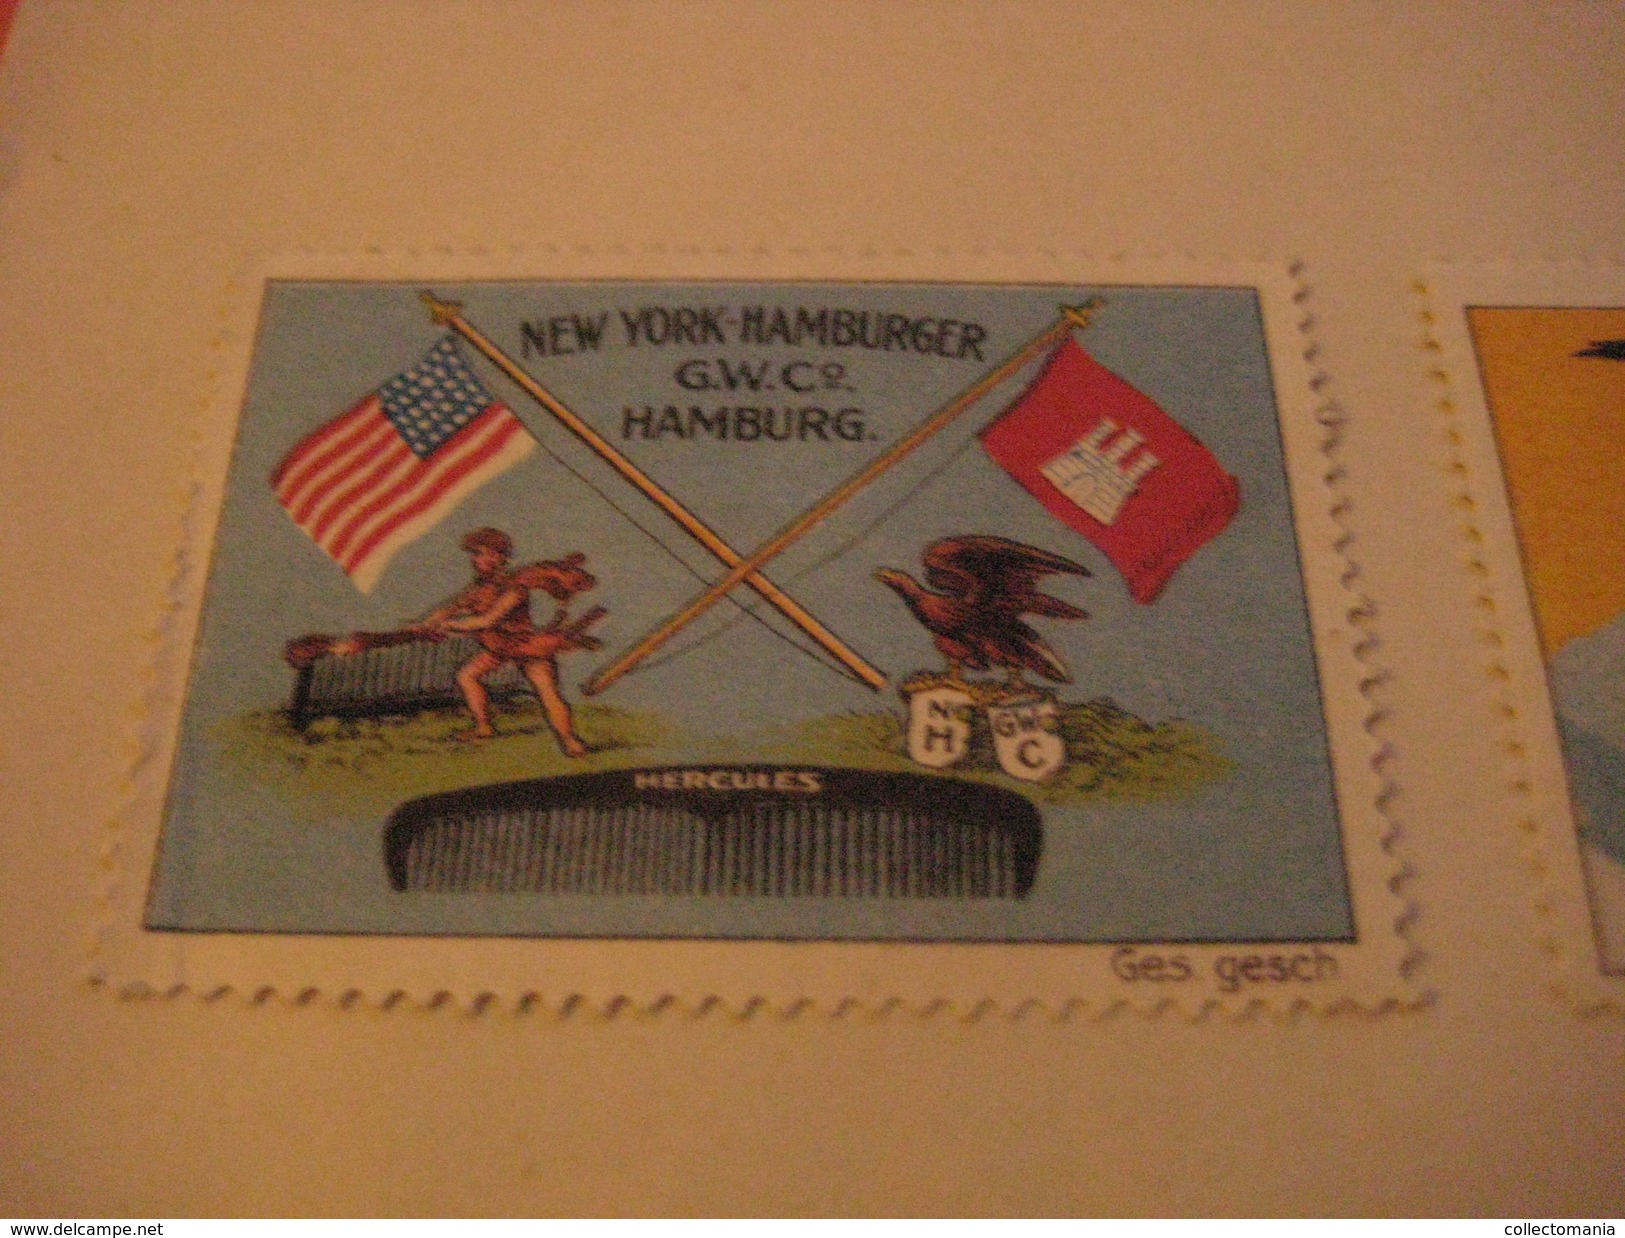 4 Poster Stamp Advertising Litho New York Hamburger GUMMIwaren ADLER KAME Käme Eagle Arend   ART - Vignetten (Erinnophilie)